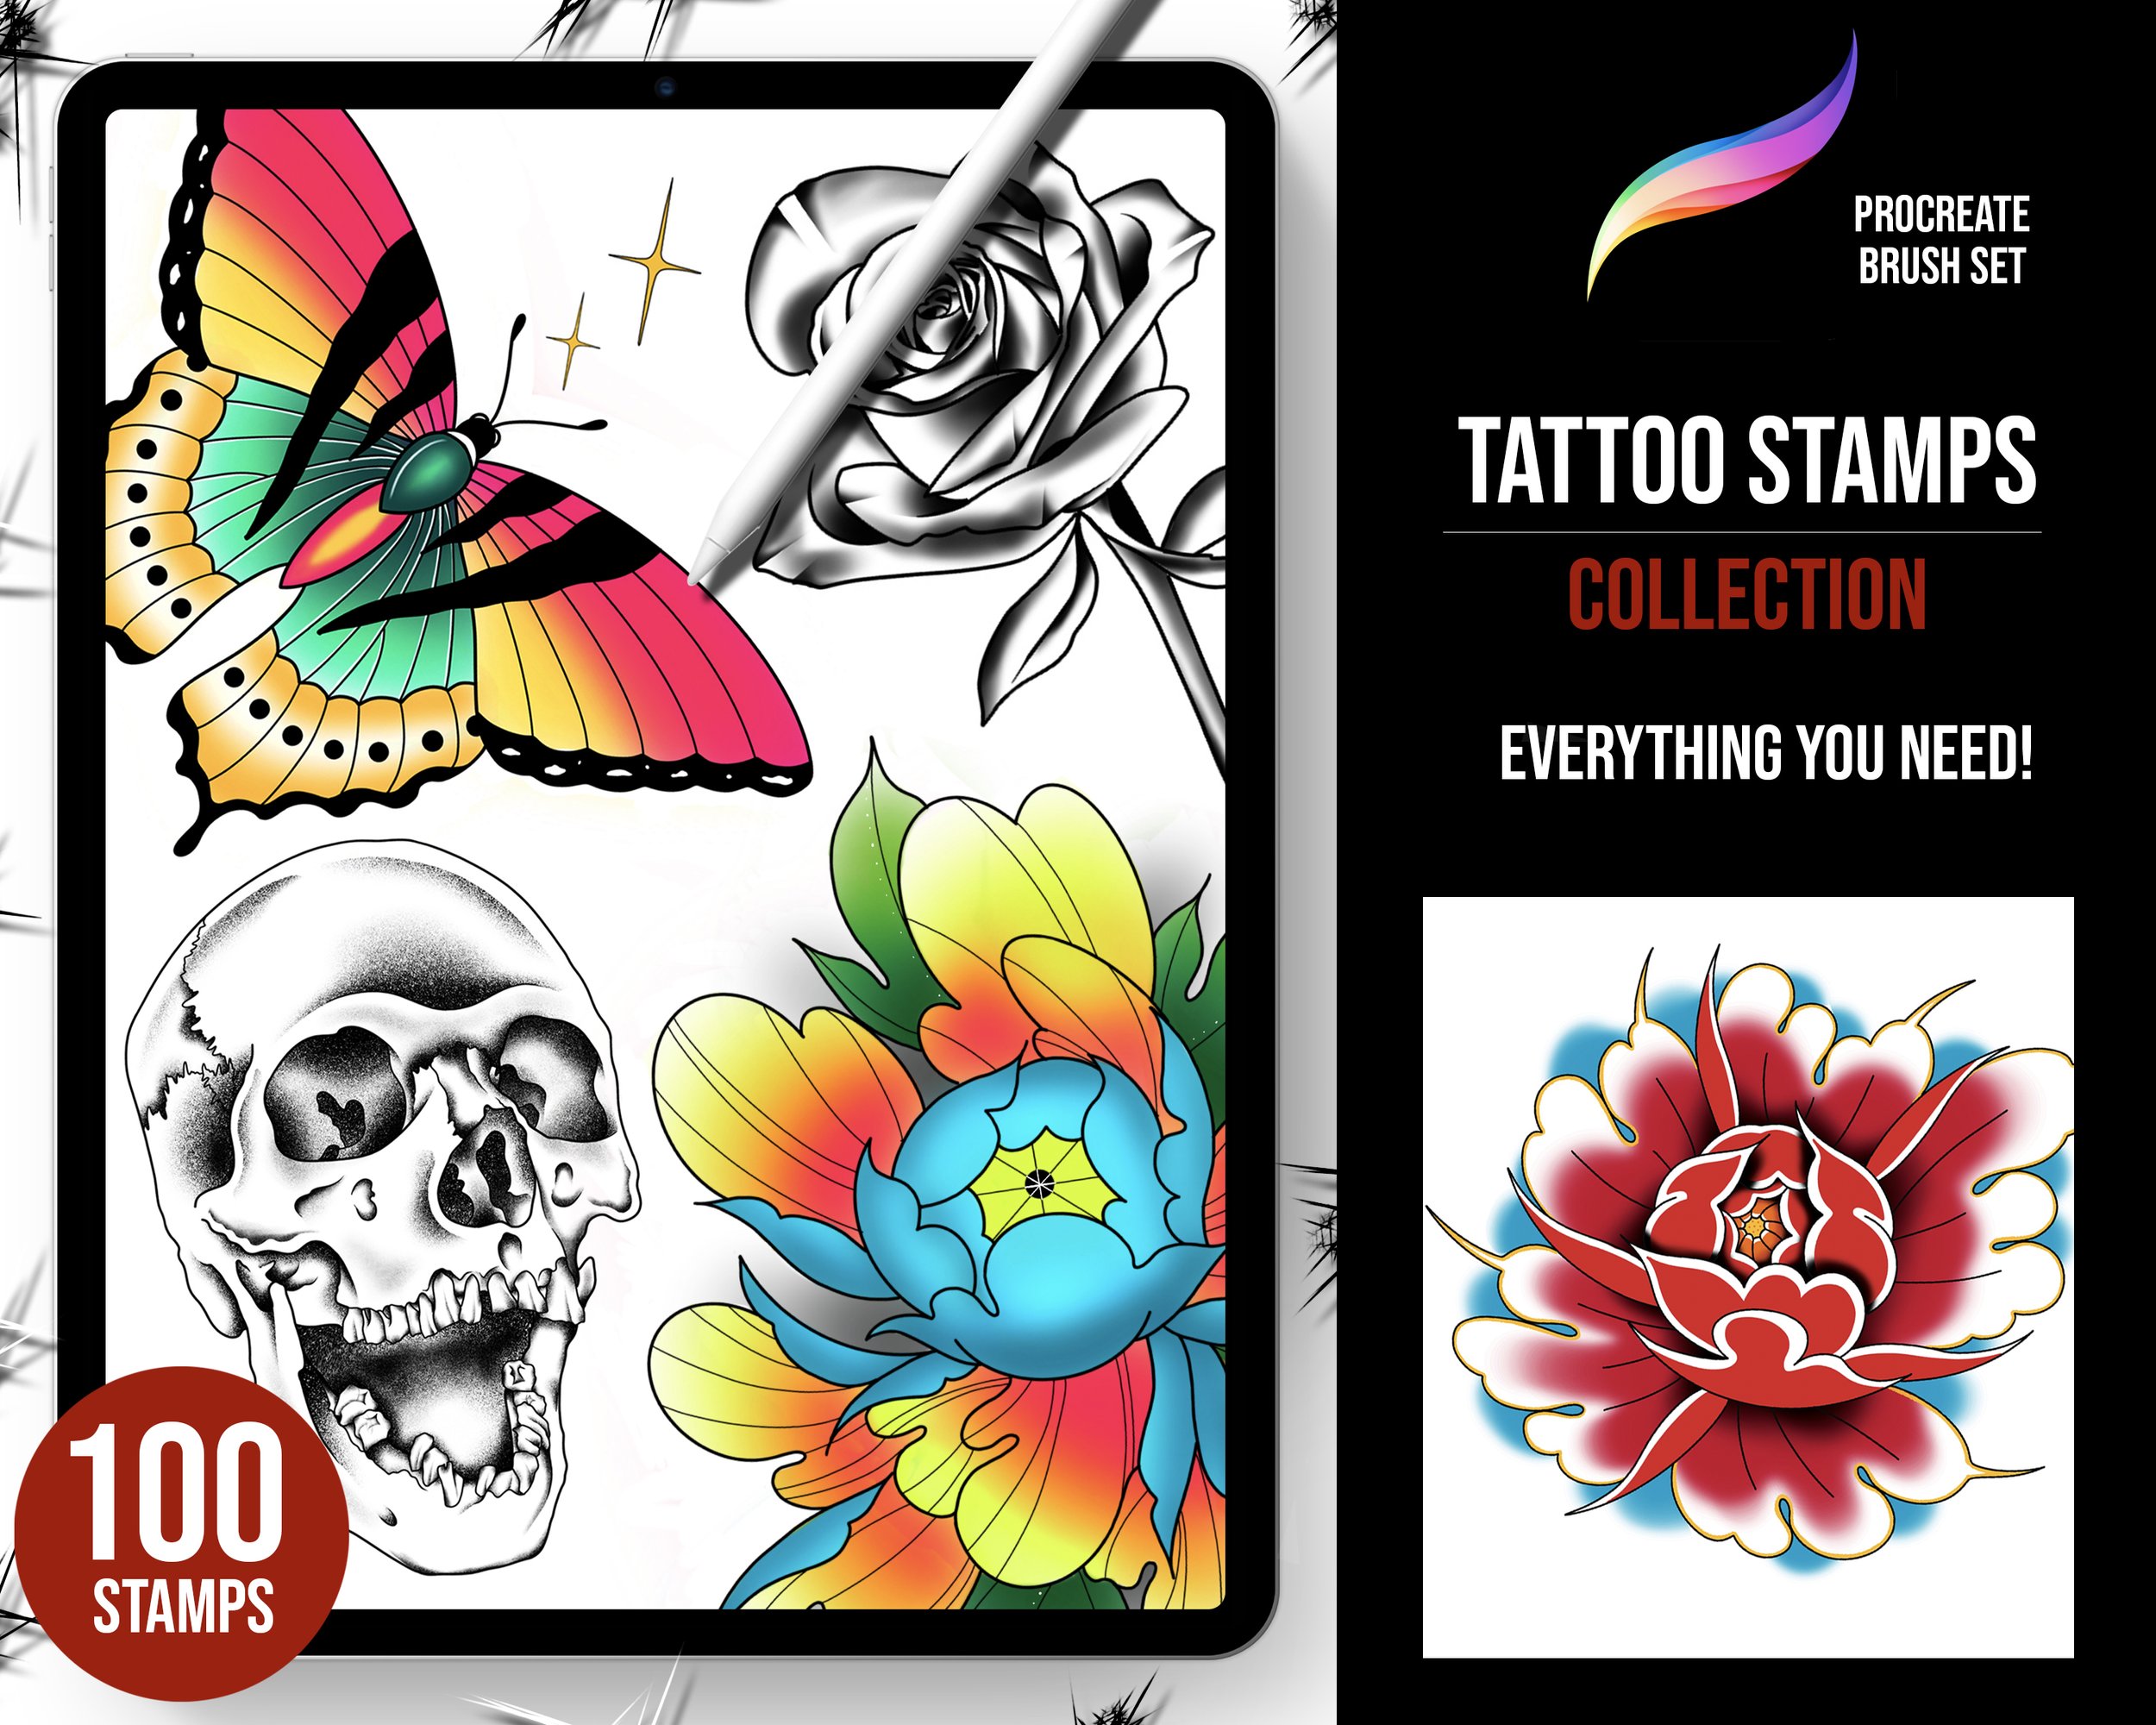 https://images.squarespace-cdn.com/content/v1/5e85147ede901f69225313f5/bf356c9d-2a52-47b8-9d1d-14f73c630491/tattoo+stamps+collection+front.jpg